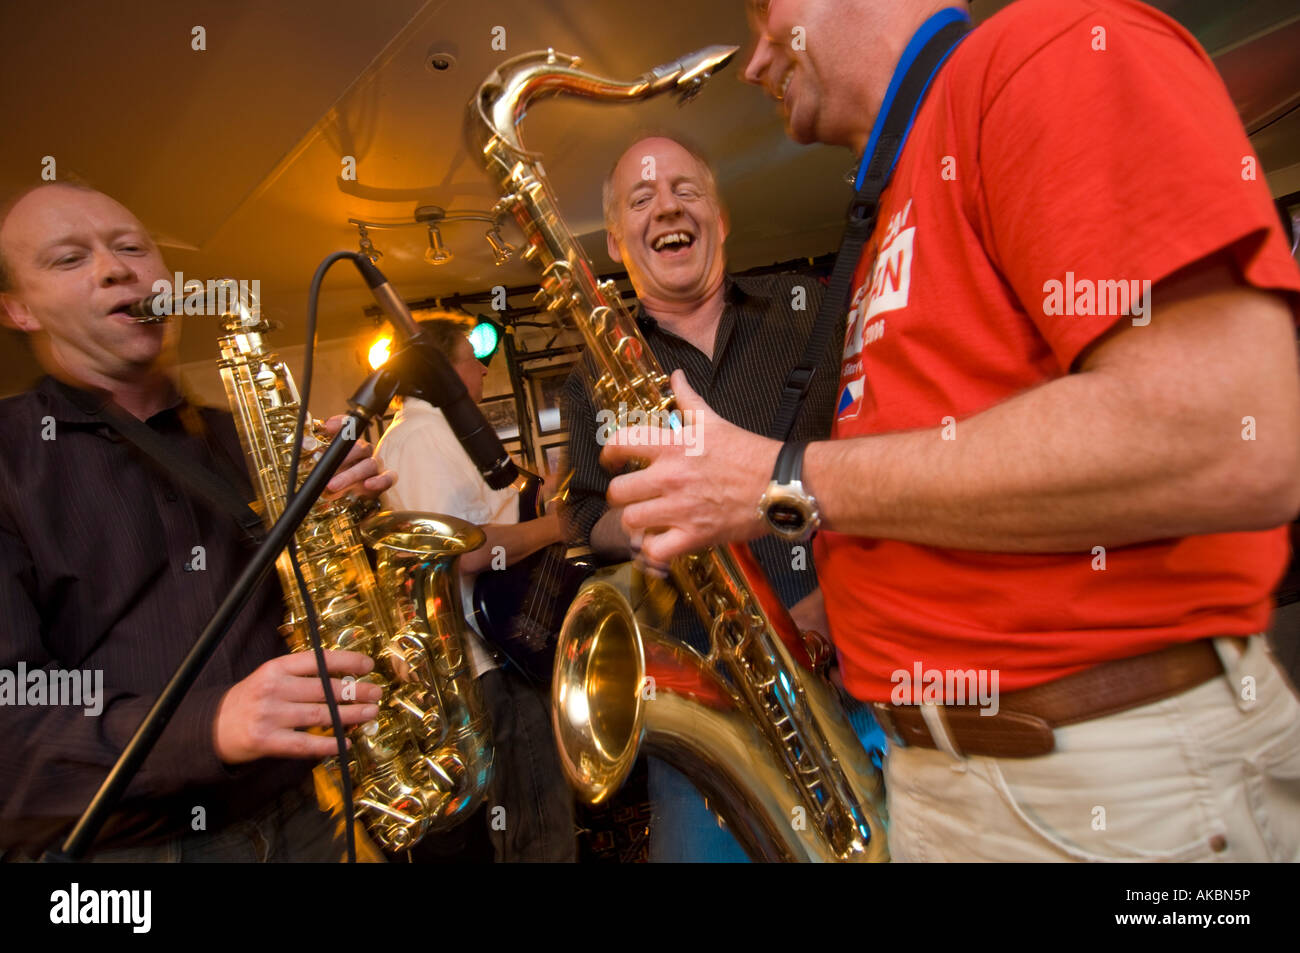 Tres feliz sonriendo riendo masculino músicos tocando música de jazz en un club nocturno Foto de stock